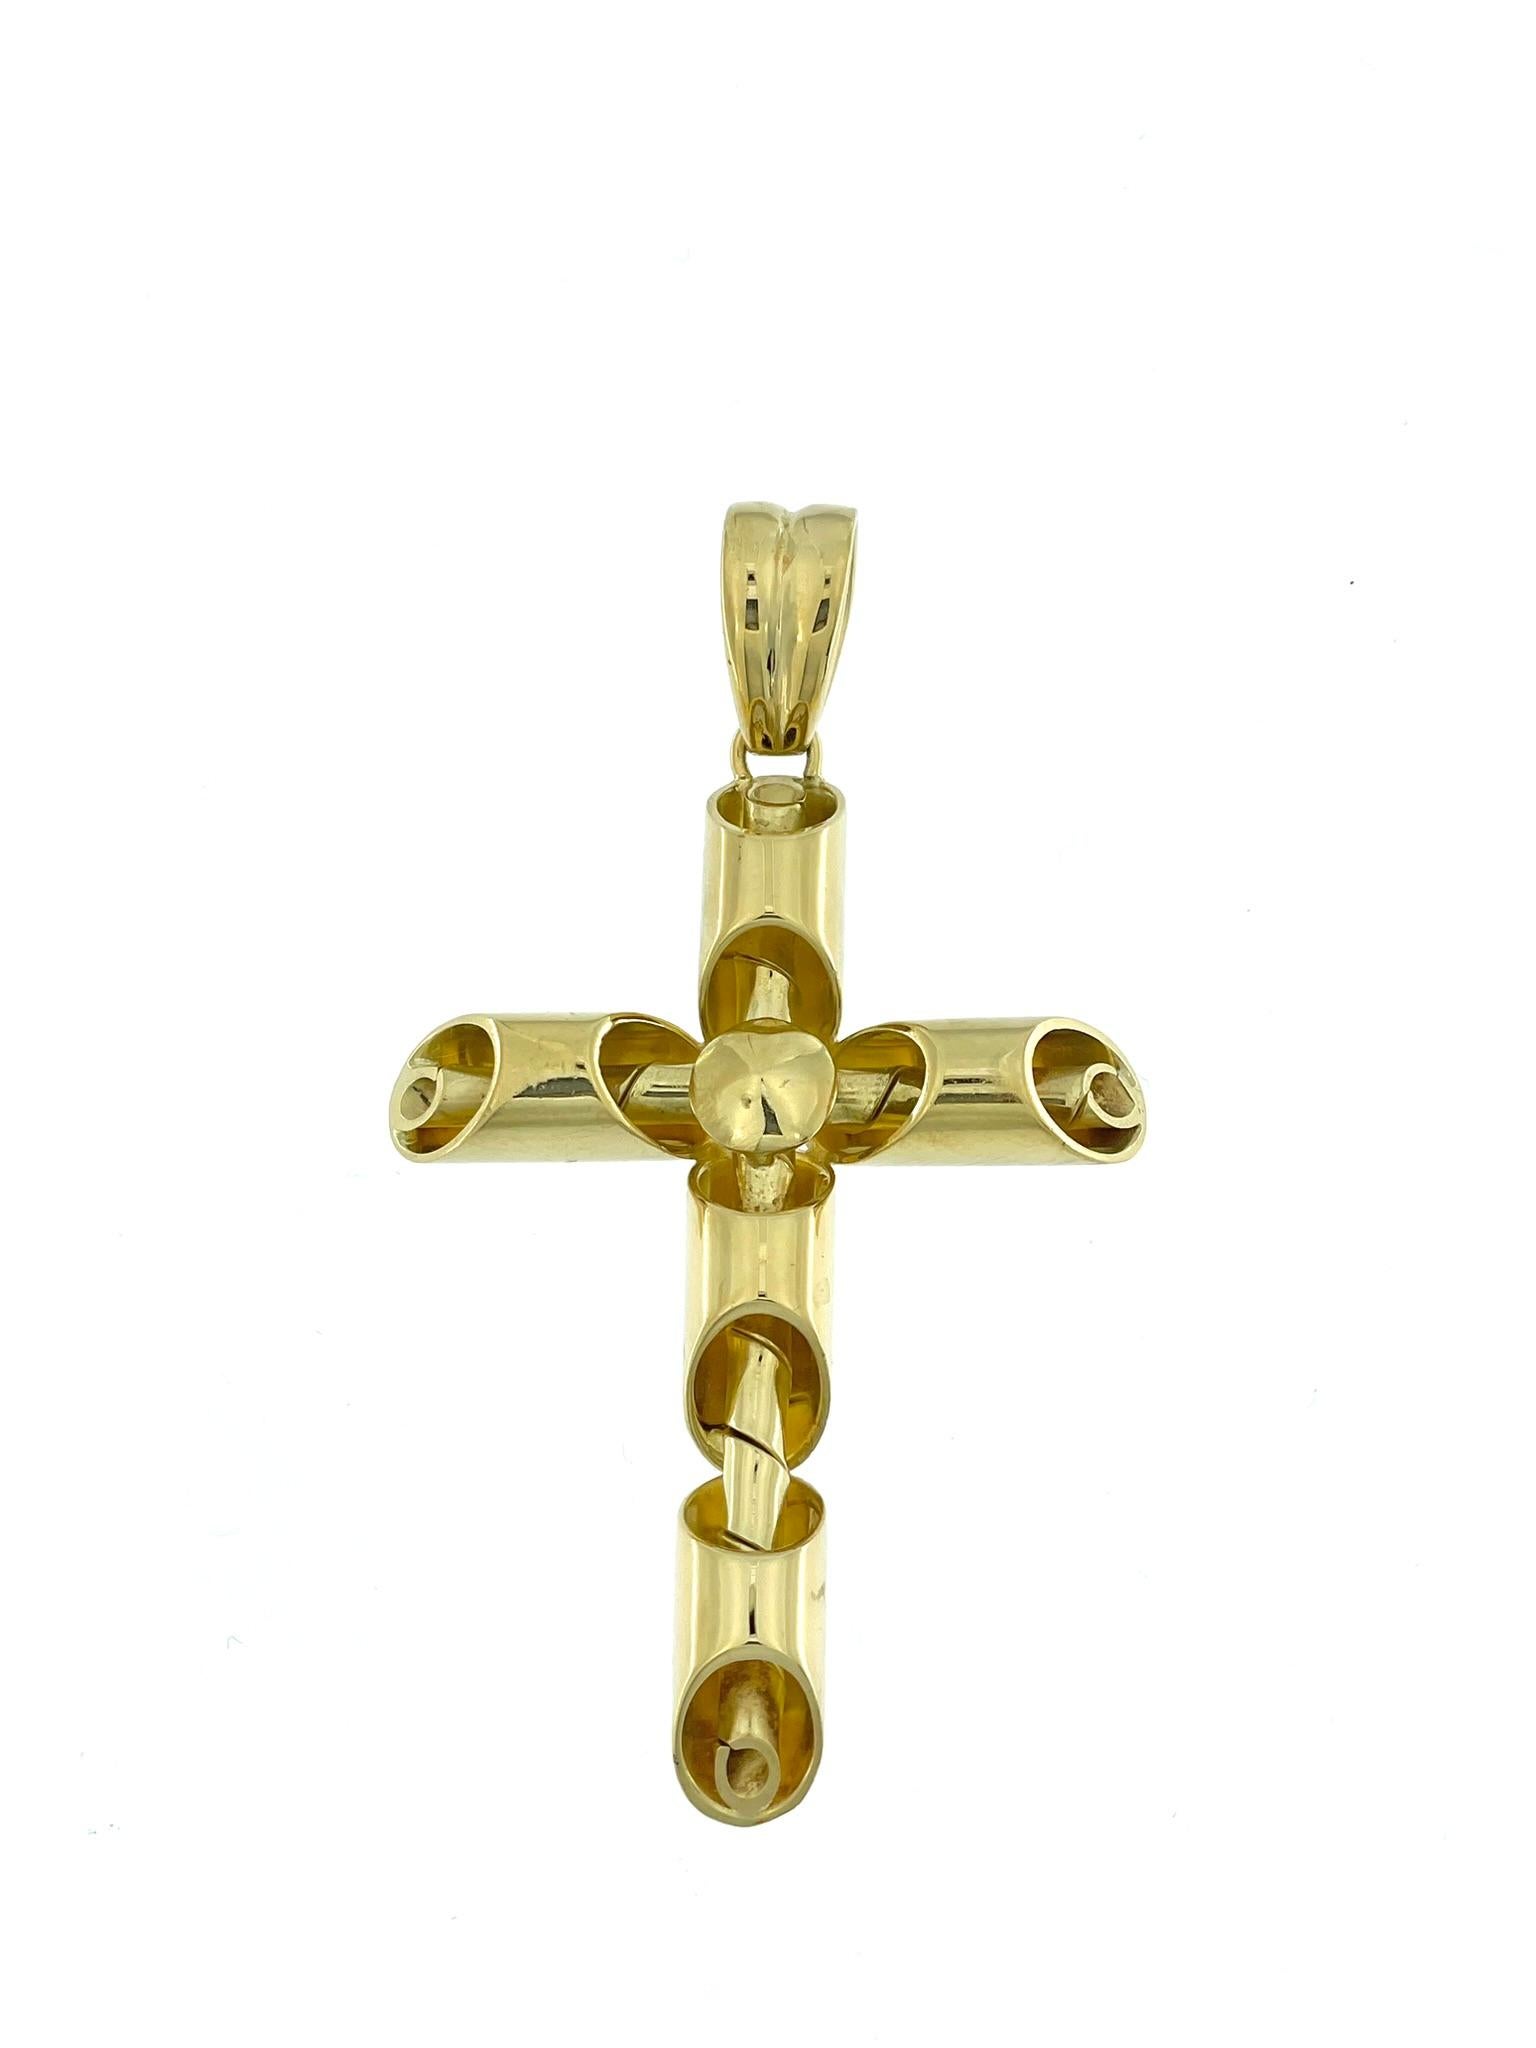 La croix italienne moderne est une interprétation contemporaine d'un symbole intemporel, réalisée avec un sens artistique et un souci du détail exceptionnels. Fabriquée en or jaune 18kt, cette croix respire l'élégance et la sophistication.

Le